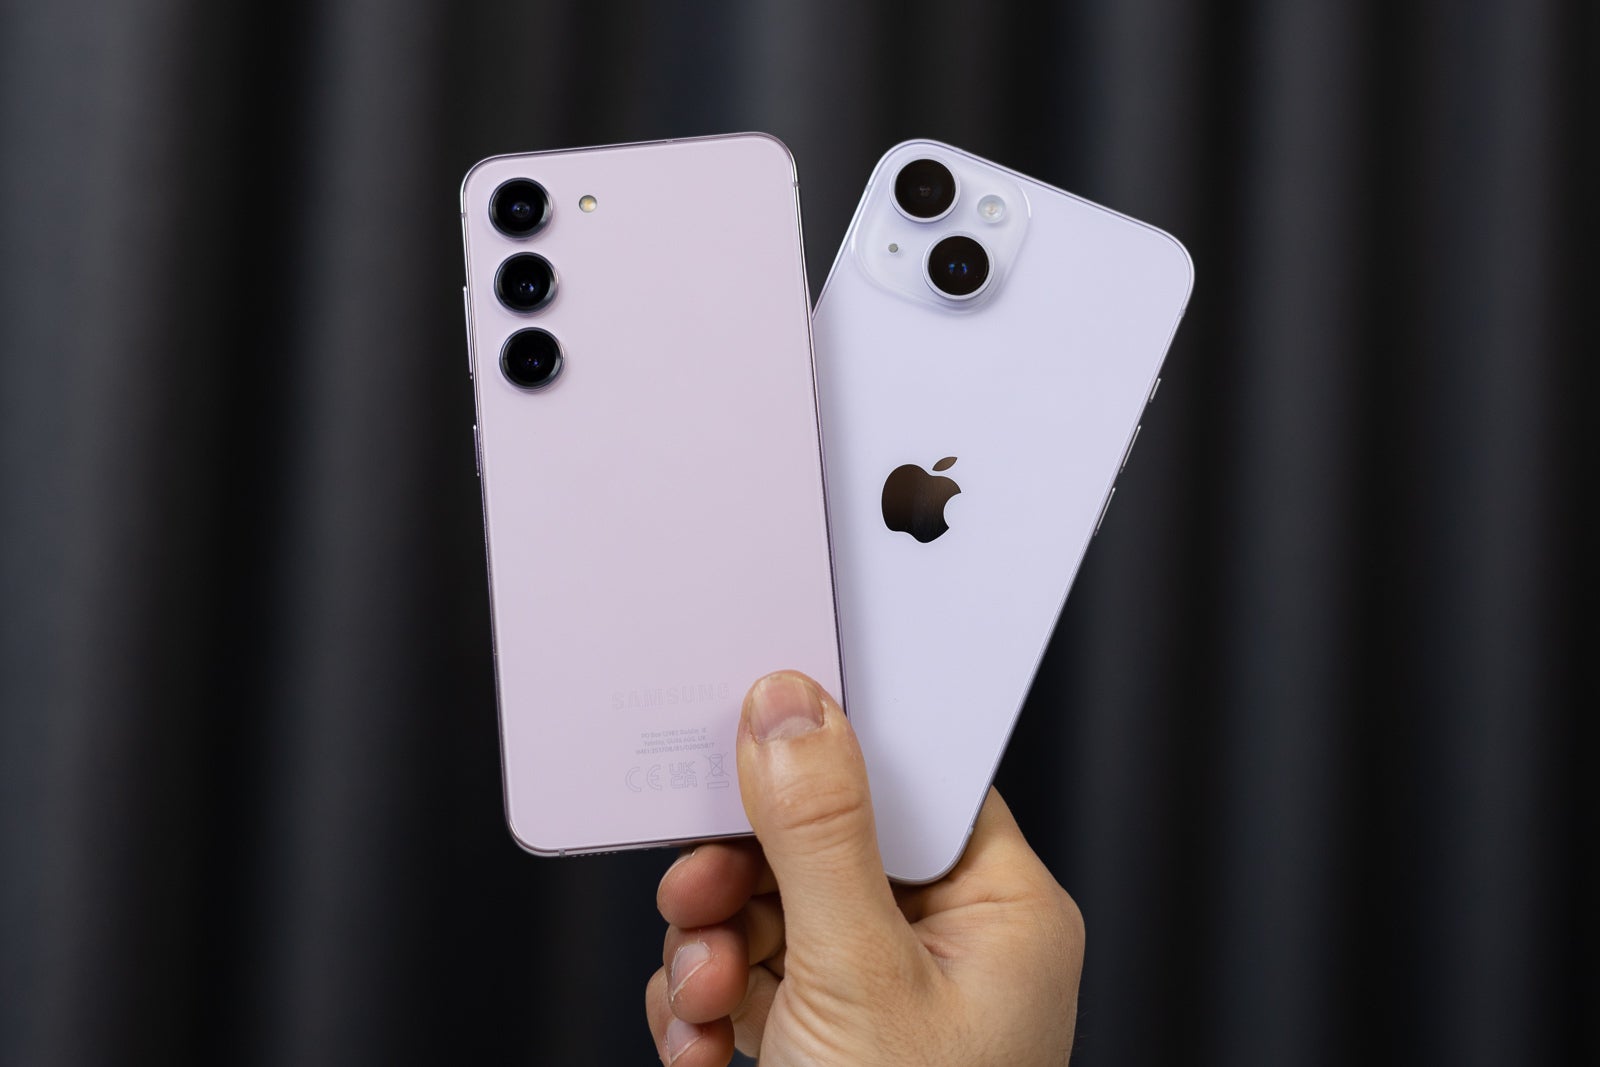 دونوں کو سنبھالنا آسان ہے (تصویری کریڈٹ - فونیرینا) - سیمسنگ گلیکسی ایس 23 بمقابلہ ایپل آئی فون 14: آپ کے $ 800 کے لئے مزید!